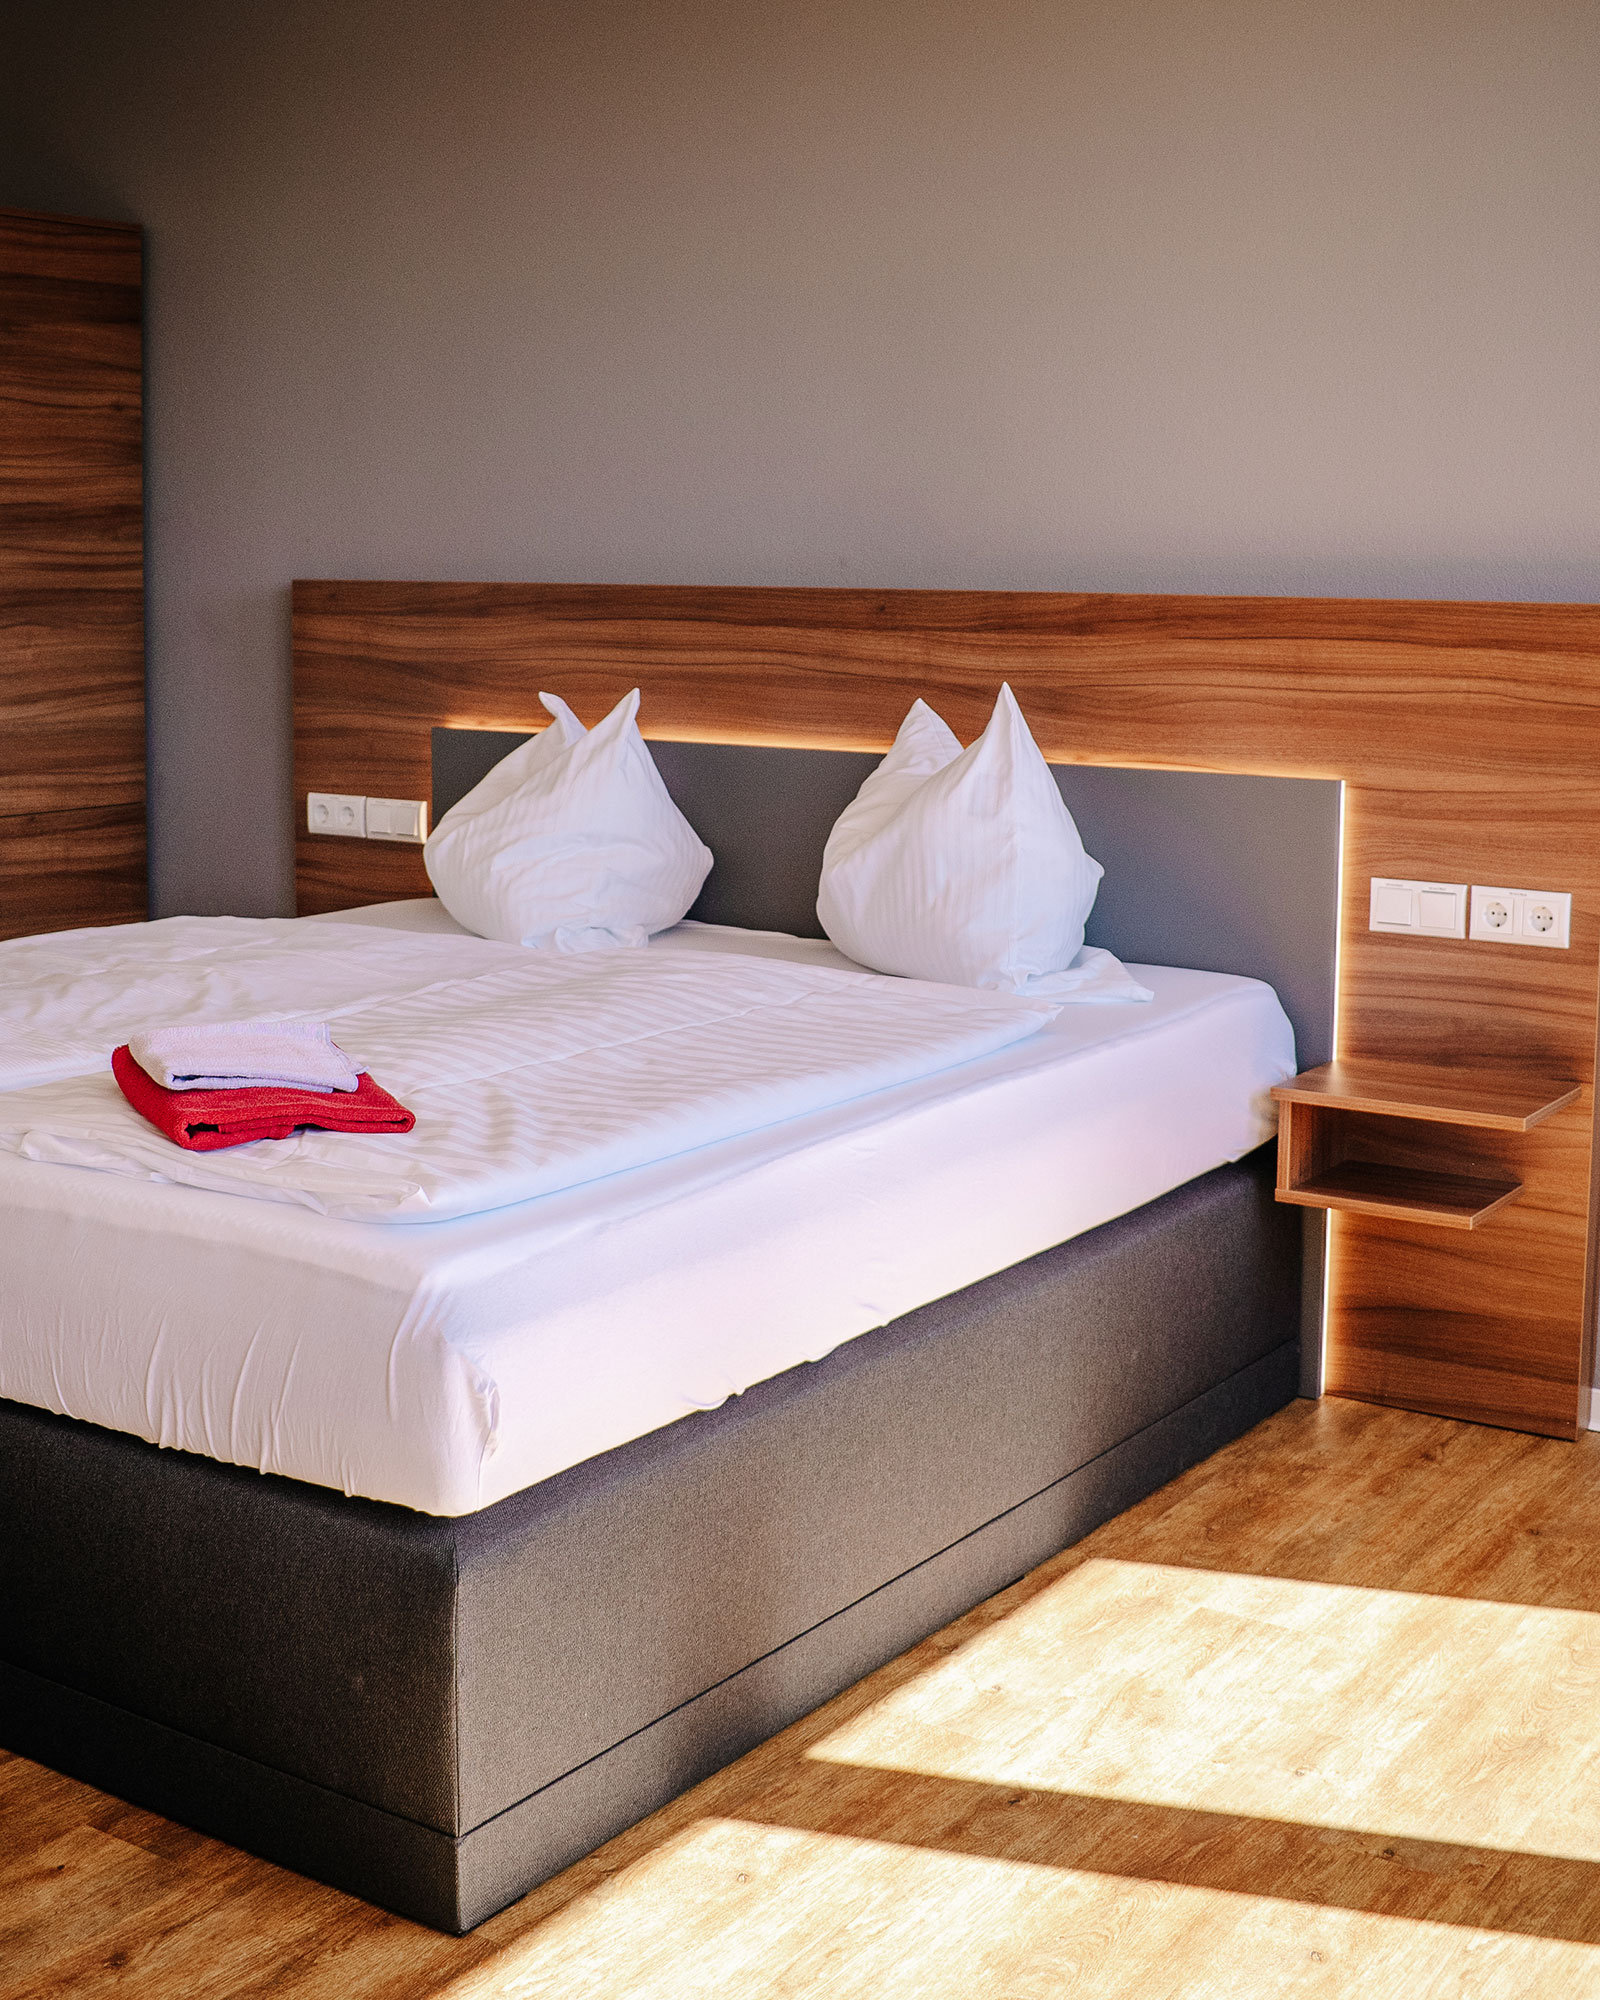 Boxspringbett mit weißer Bettwäsche vor Holzvertäfelung an Wand mit Nachttisch